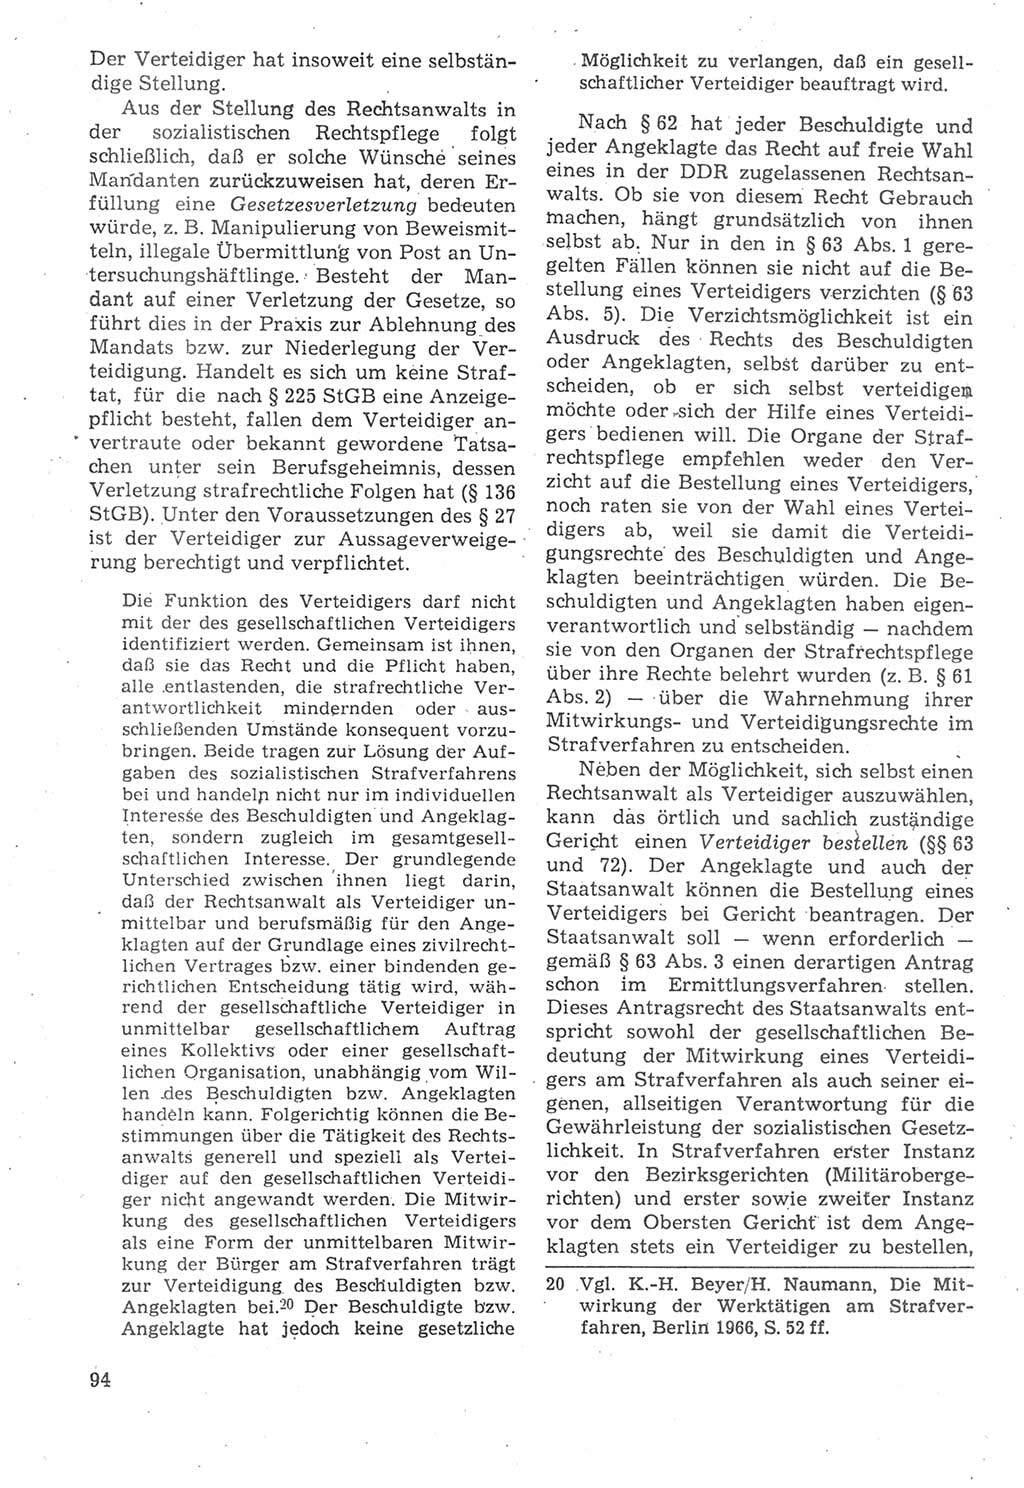 Strafverfahrensrecht [Deutsche Demokratische Republik (DDR)], Lehrbuch 1987, Seite 94 (Strafverf.-R. DDR Lb. 1987, S. 94)